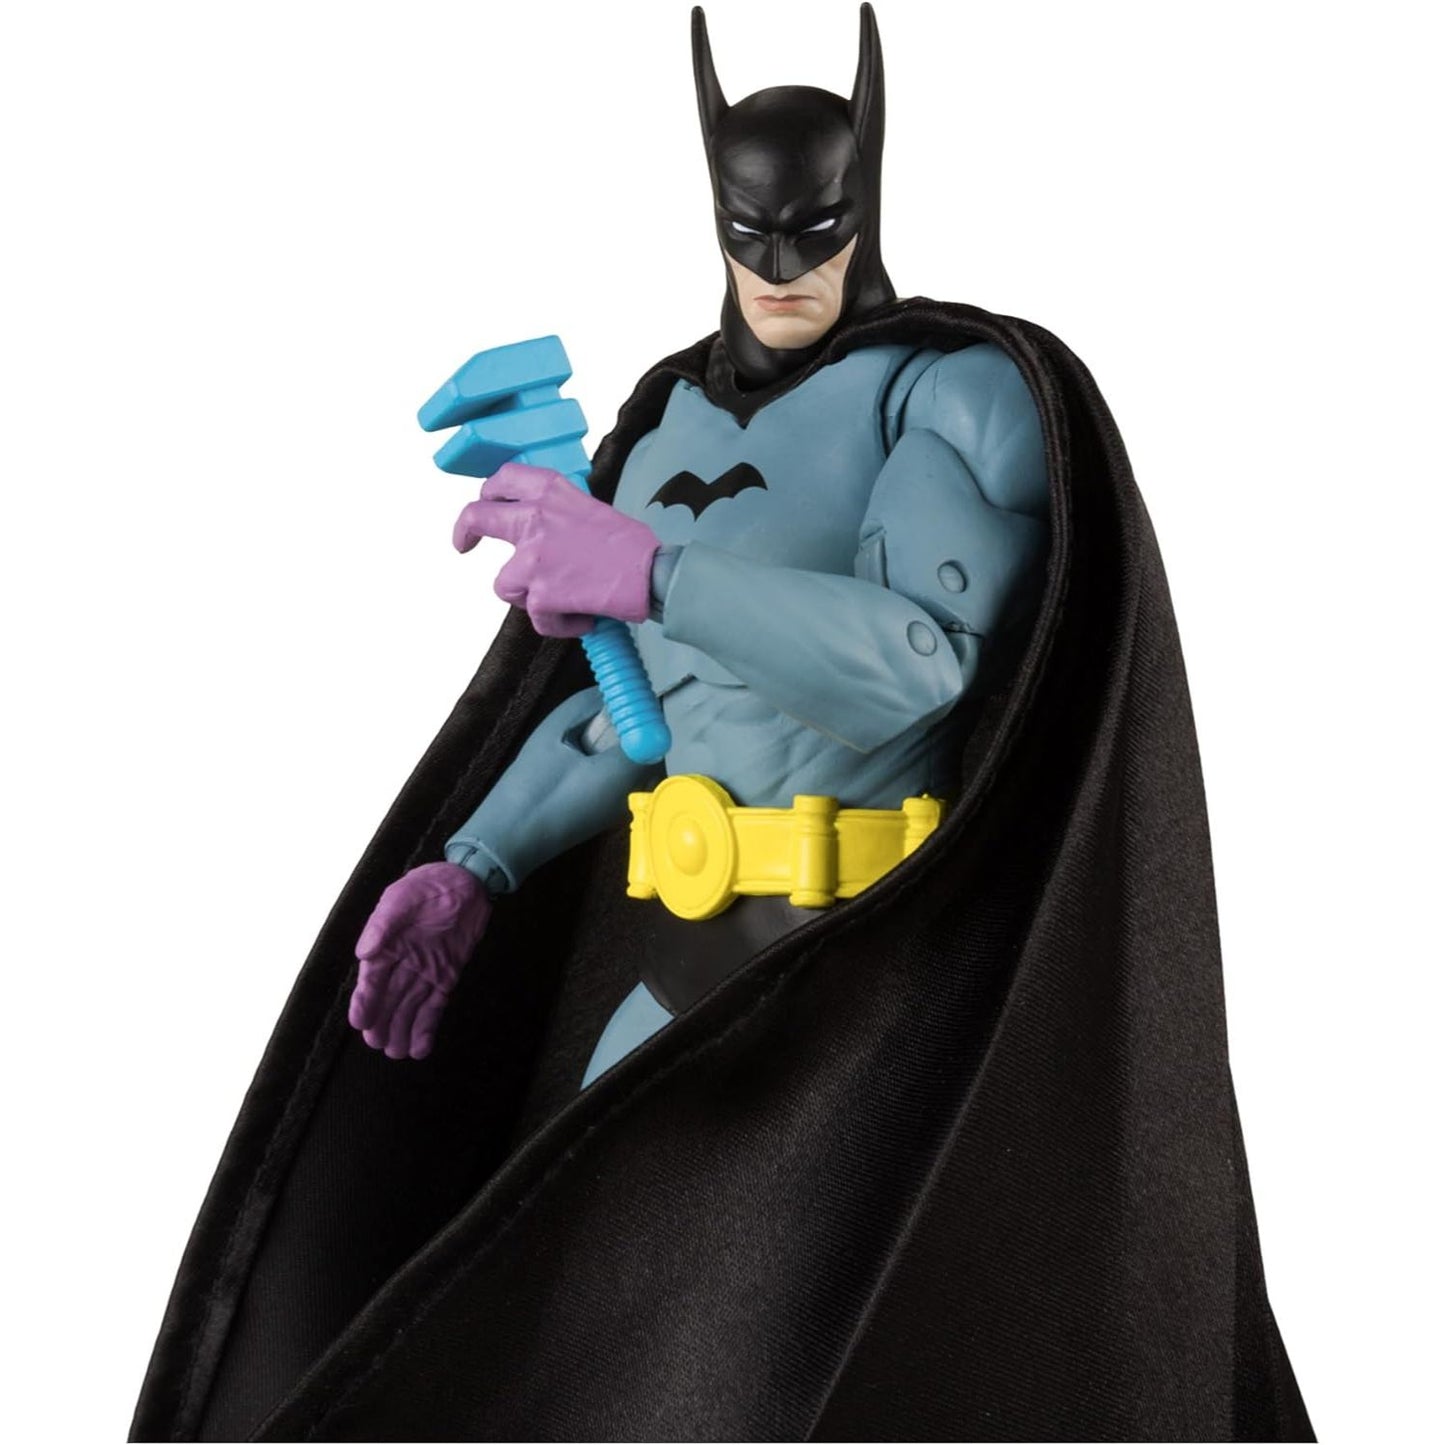 DC Multiverse Batman (Detective Comics #27) 7in Action Figure